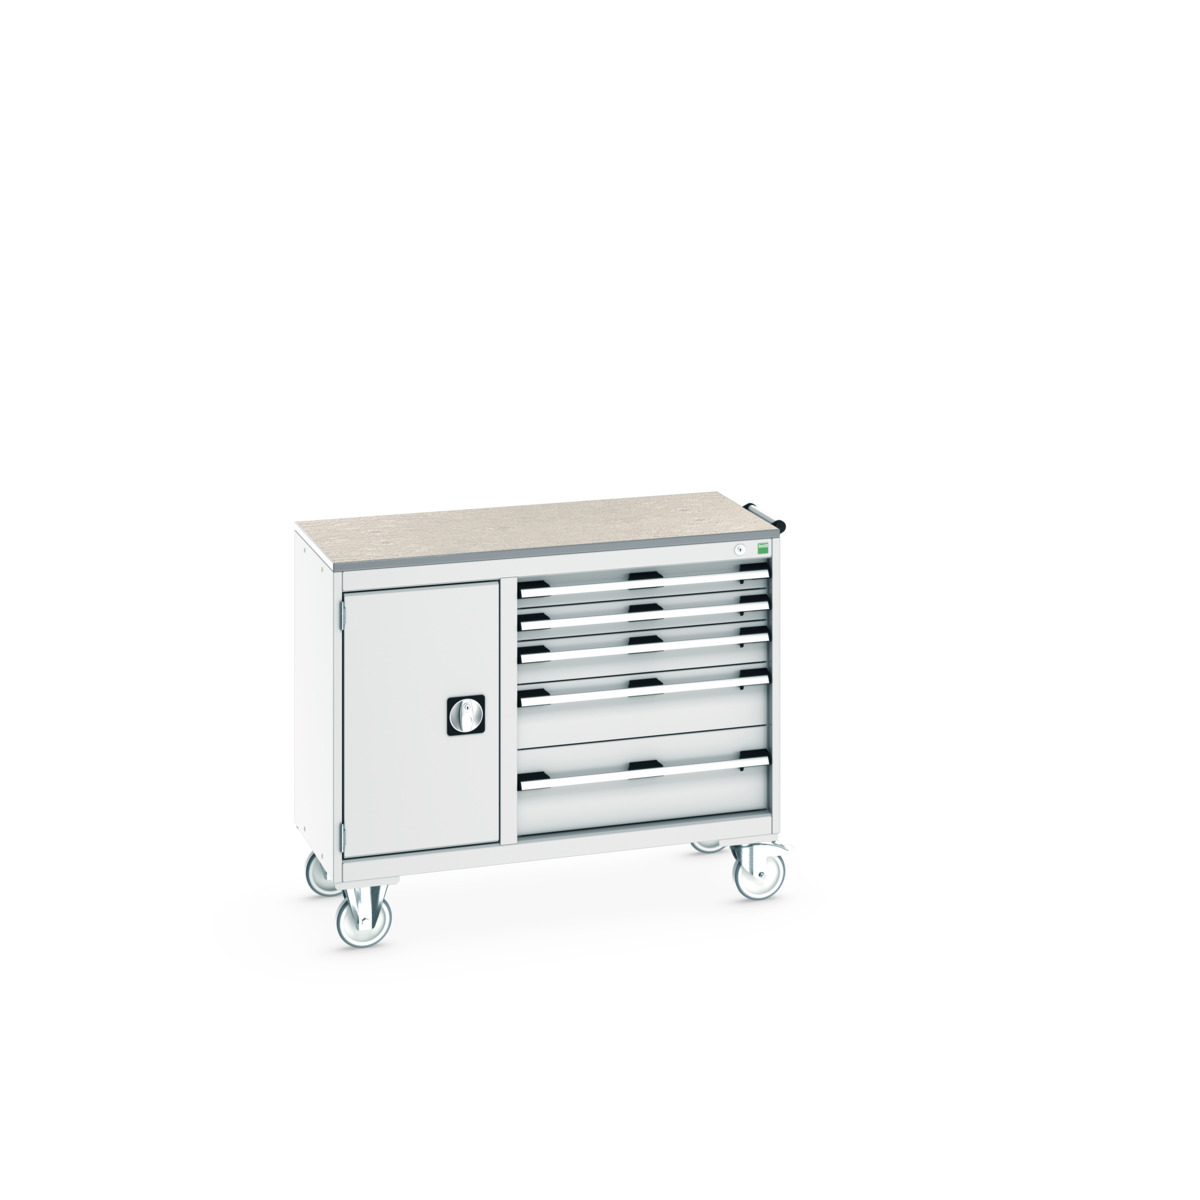 41006014.16V - cubio mobile cabinet 40/60 (lino)